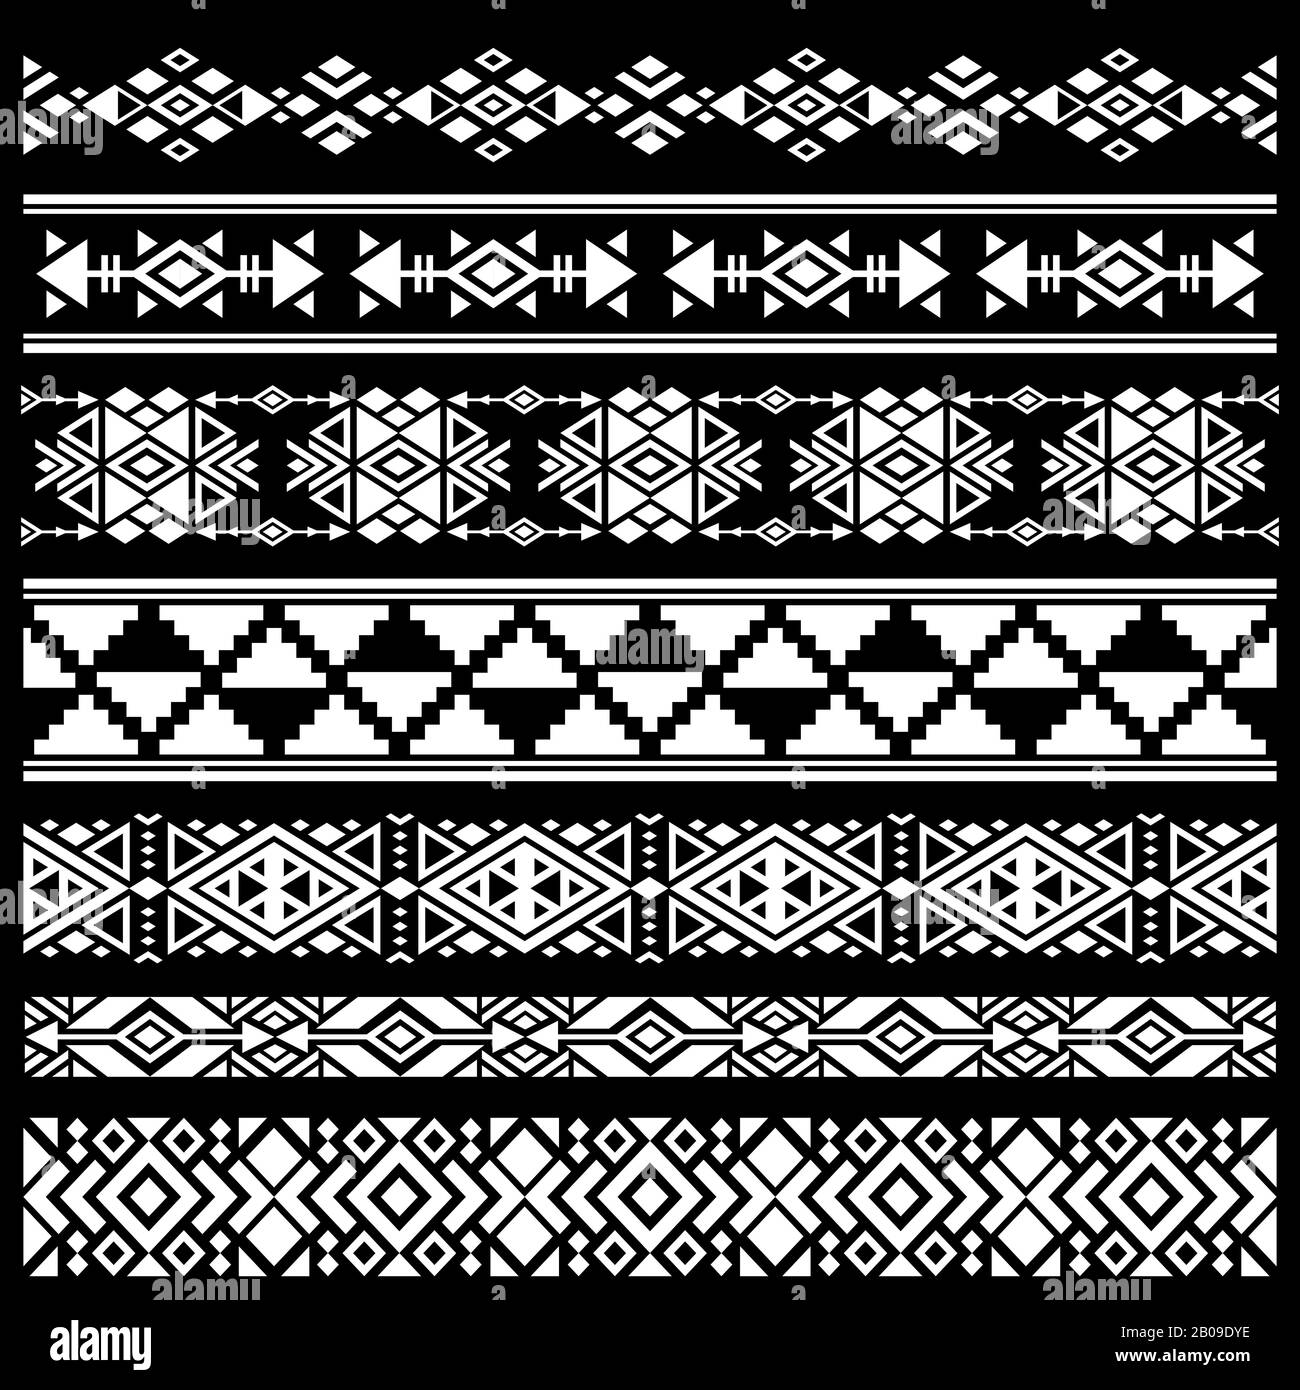 Arte mexicano, americano tribal decoración vector pinceles, bordes. Decoración mexicana blanca negra, antigua ilustración geométrica de la decoración mexicana Ilustración del Vector